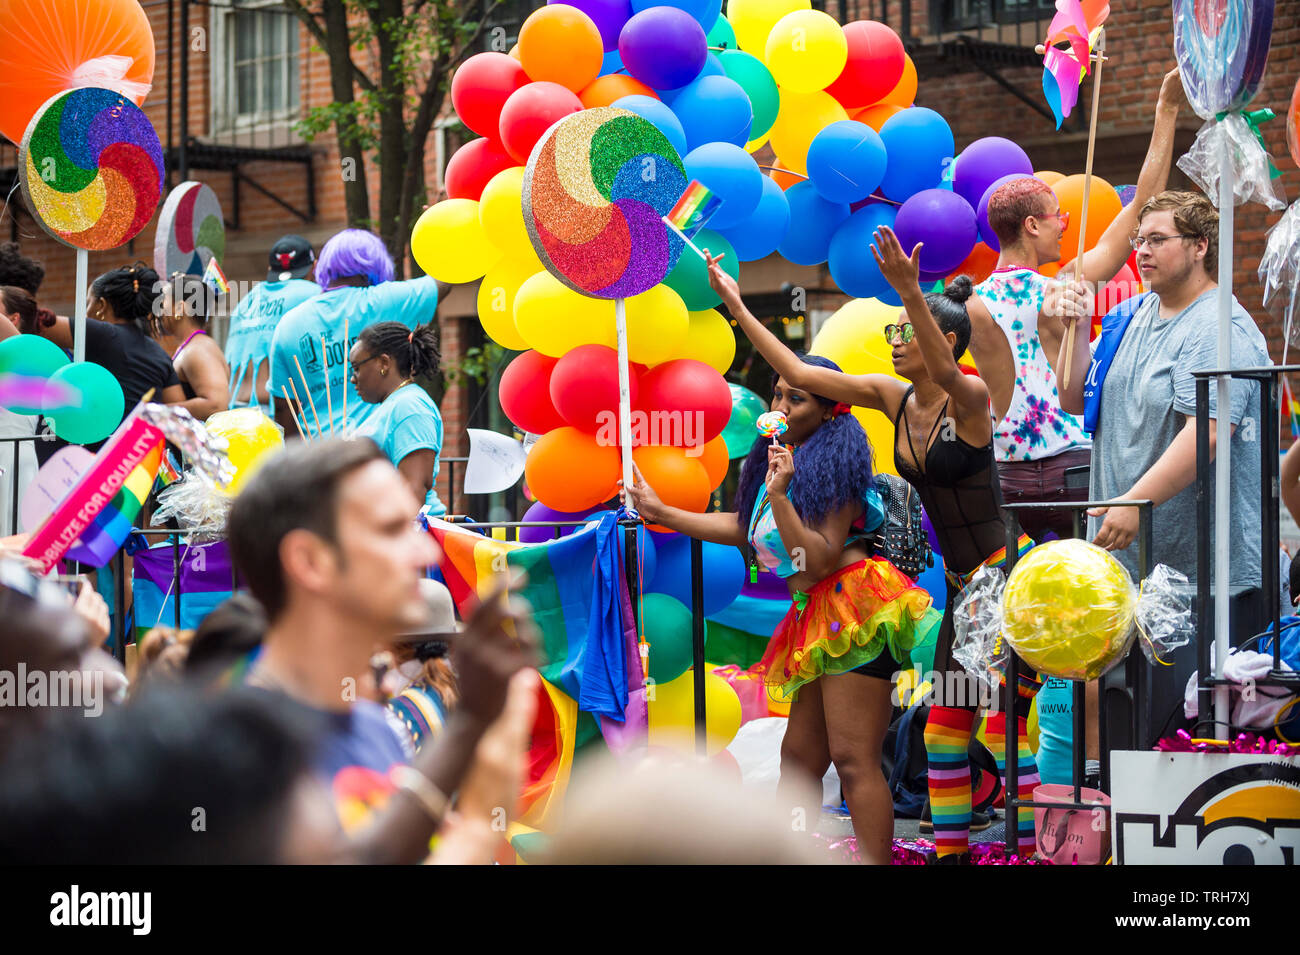 NEW YORK CITY - 25 Juni, 2017: Teilnehmer wave Regenbogenfahnen auf ein buntes Treiben mit Ballons in den jährlichen CSD-Parade in das Dorf gestaltet. Stockfoto